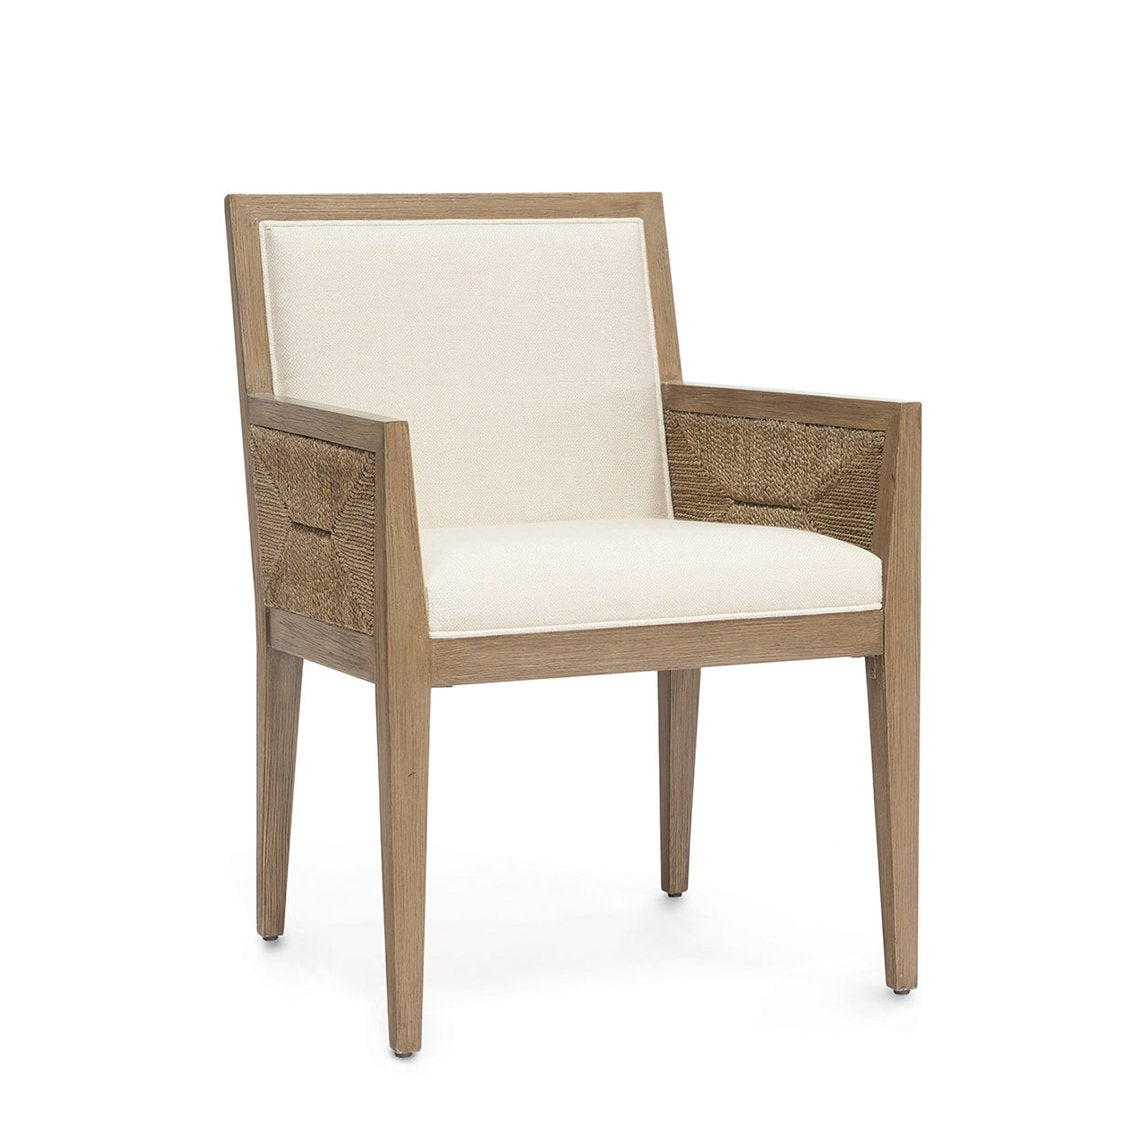 Santa Barbara Arm Chair, Natural